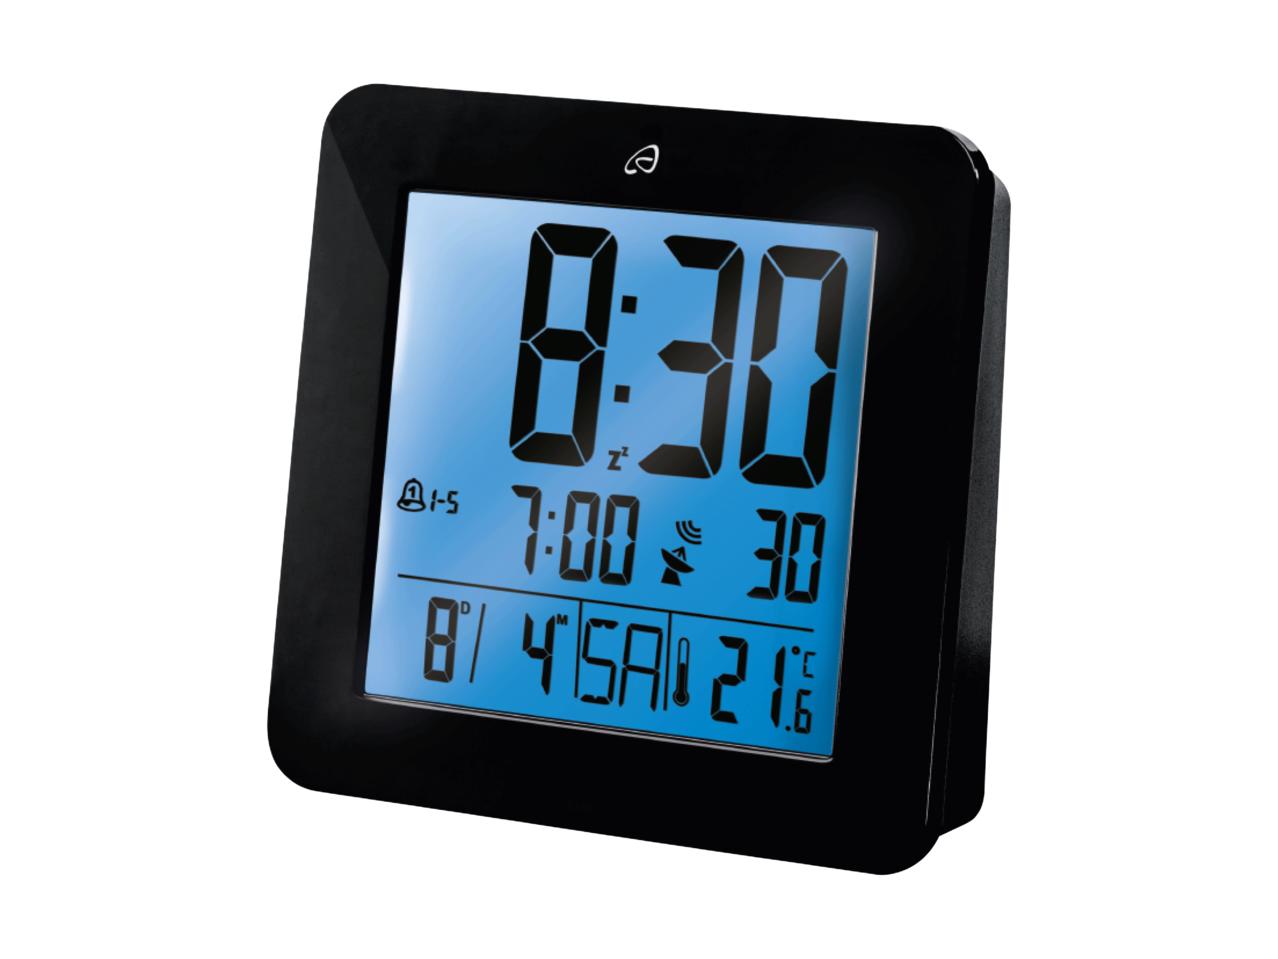 AURIOL LCD Radio-Controlled Alarm Clock